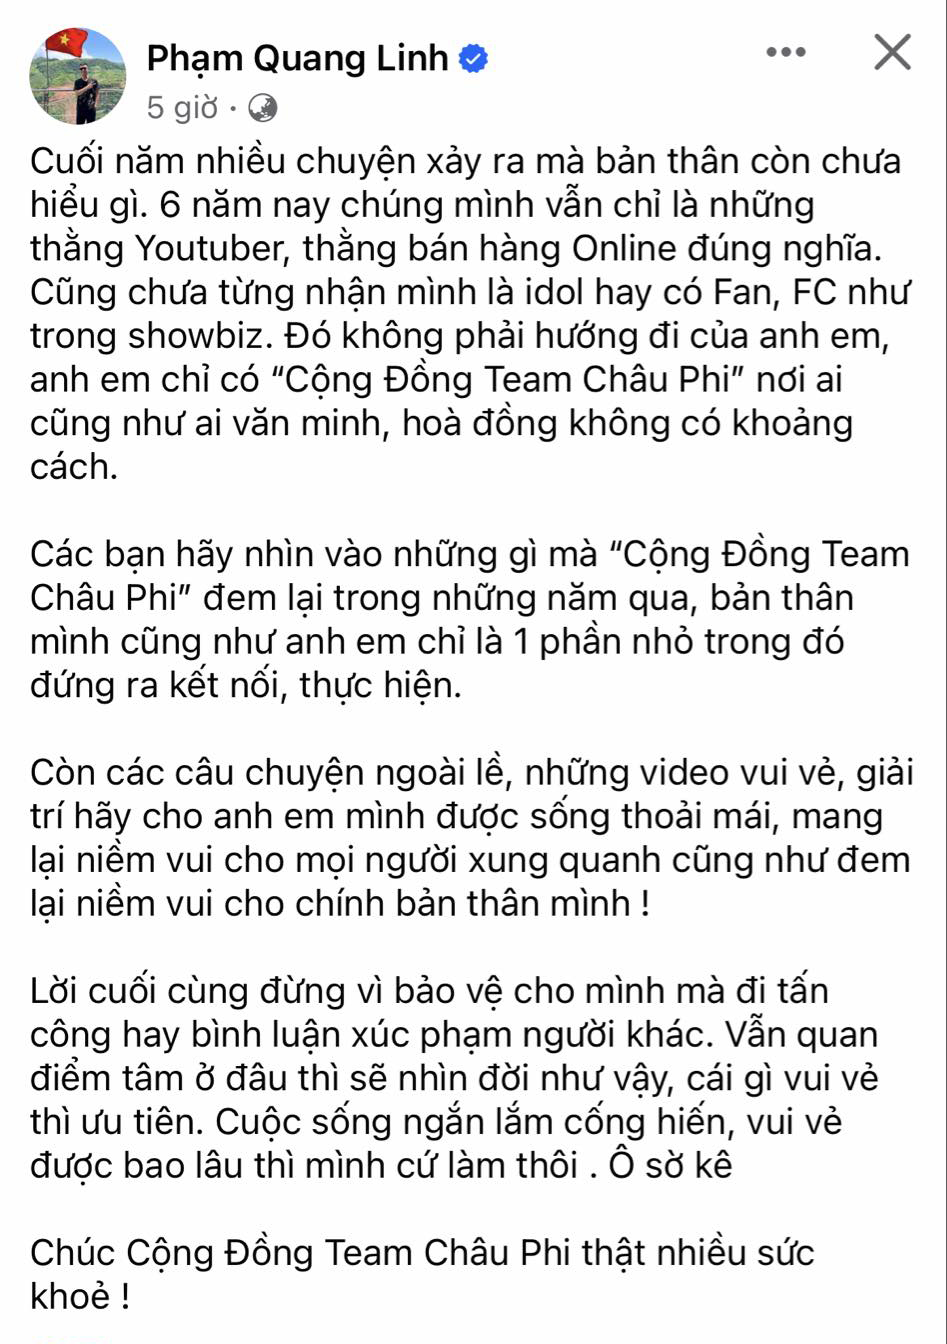 Nguyên văn bài đăng đầy tâm trạng của Quang Linh Vlog. Ảnh: Chụp màn hình